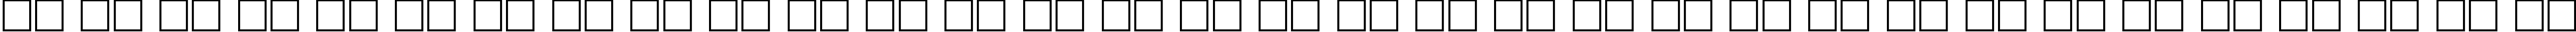 Пример написания русского алфавита шрифтом LithographLight